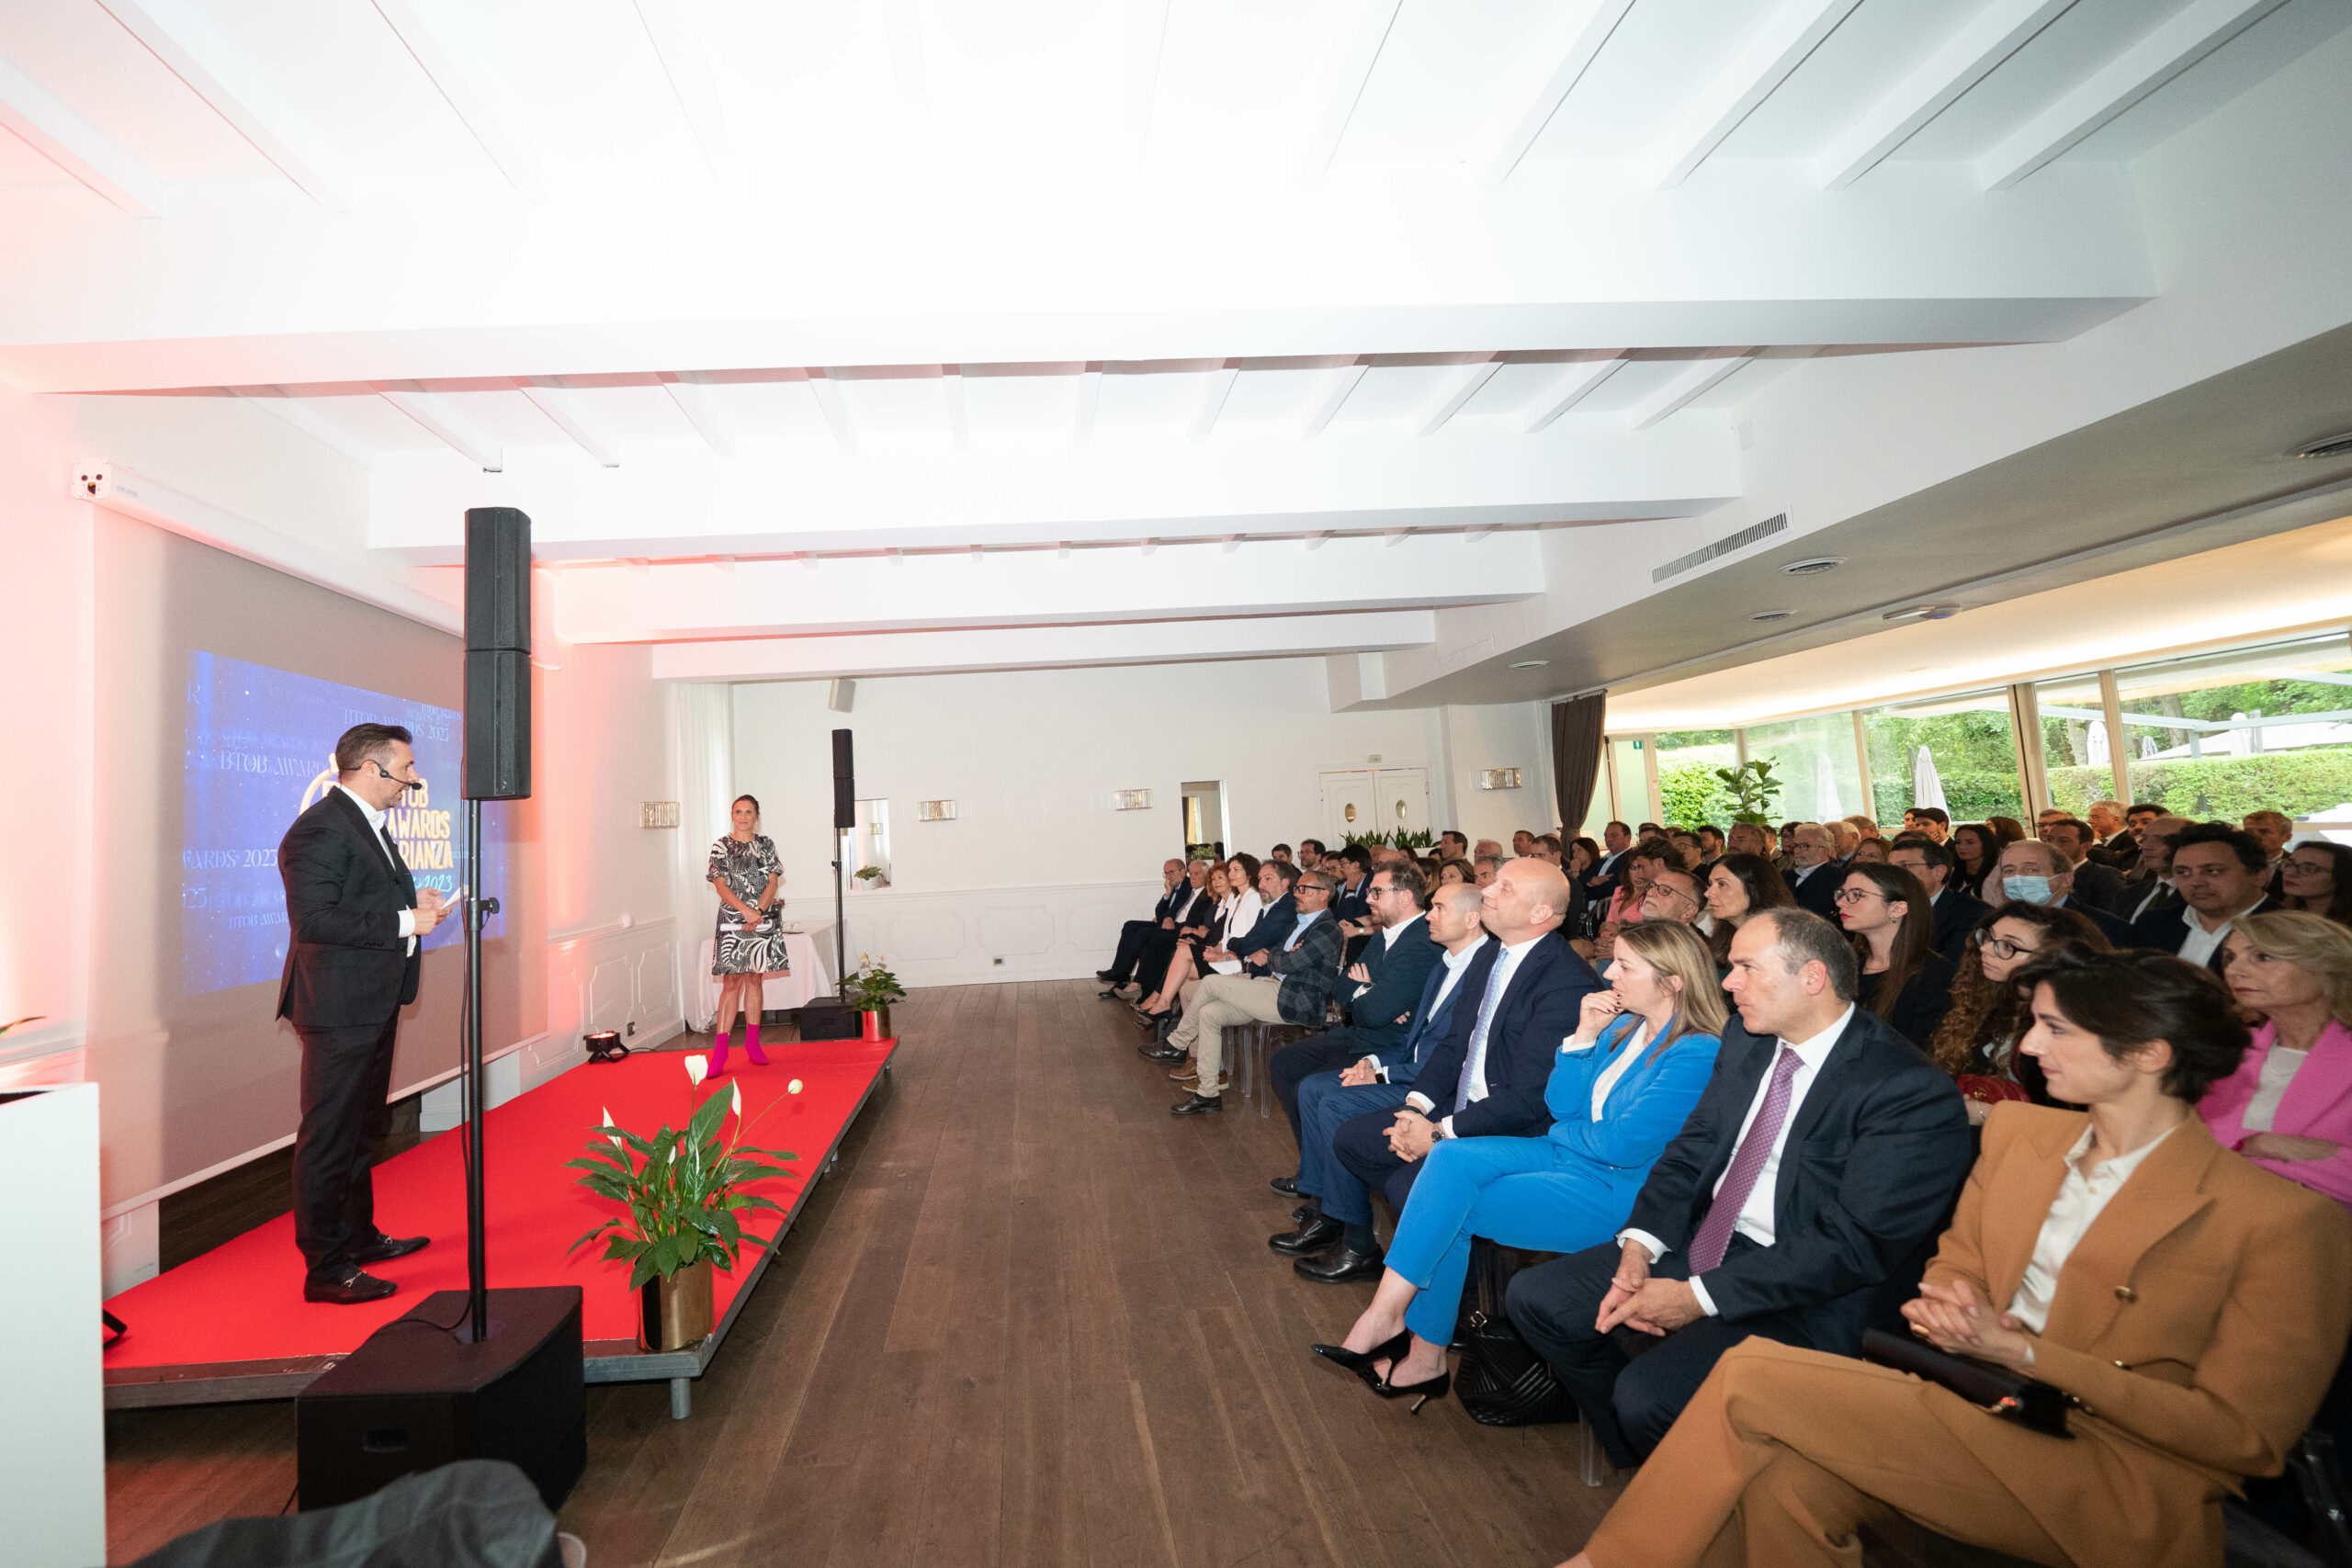 BtoB Awards coinvolge le eccellenze imprenditoriali di Monza, Lecco e Como